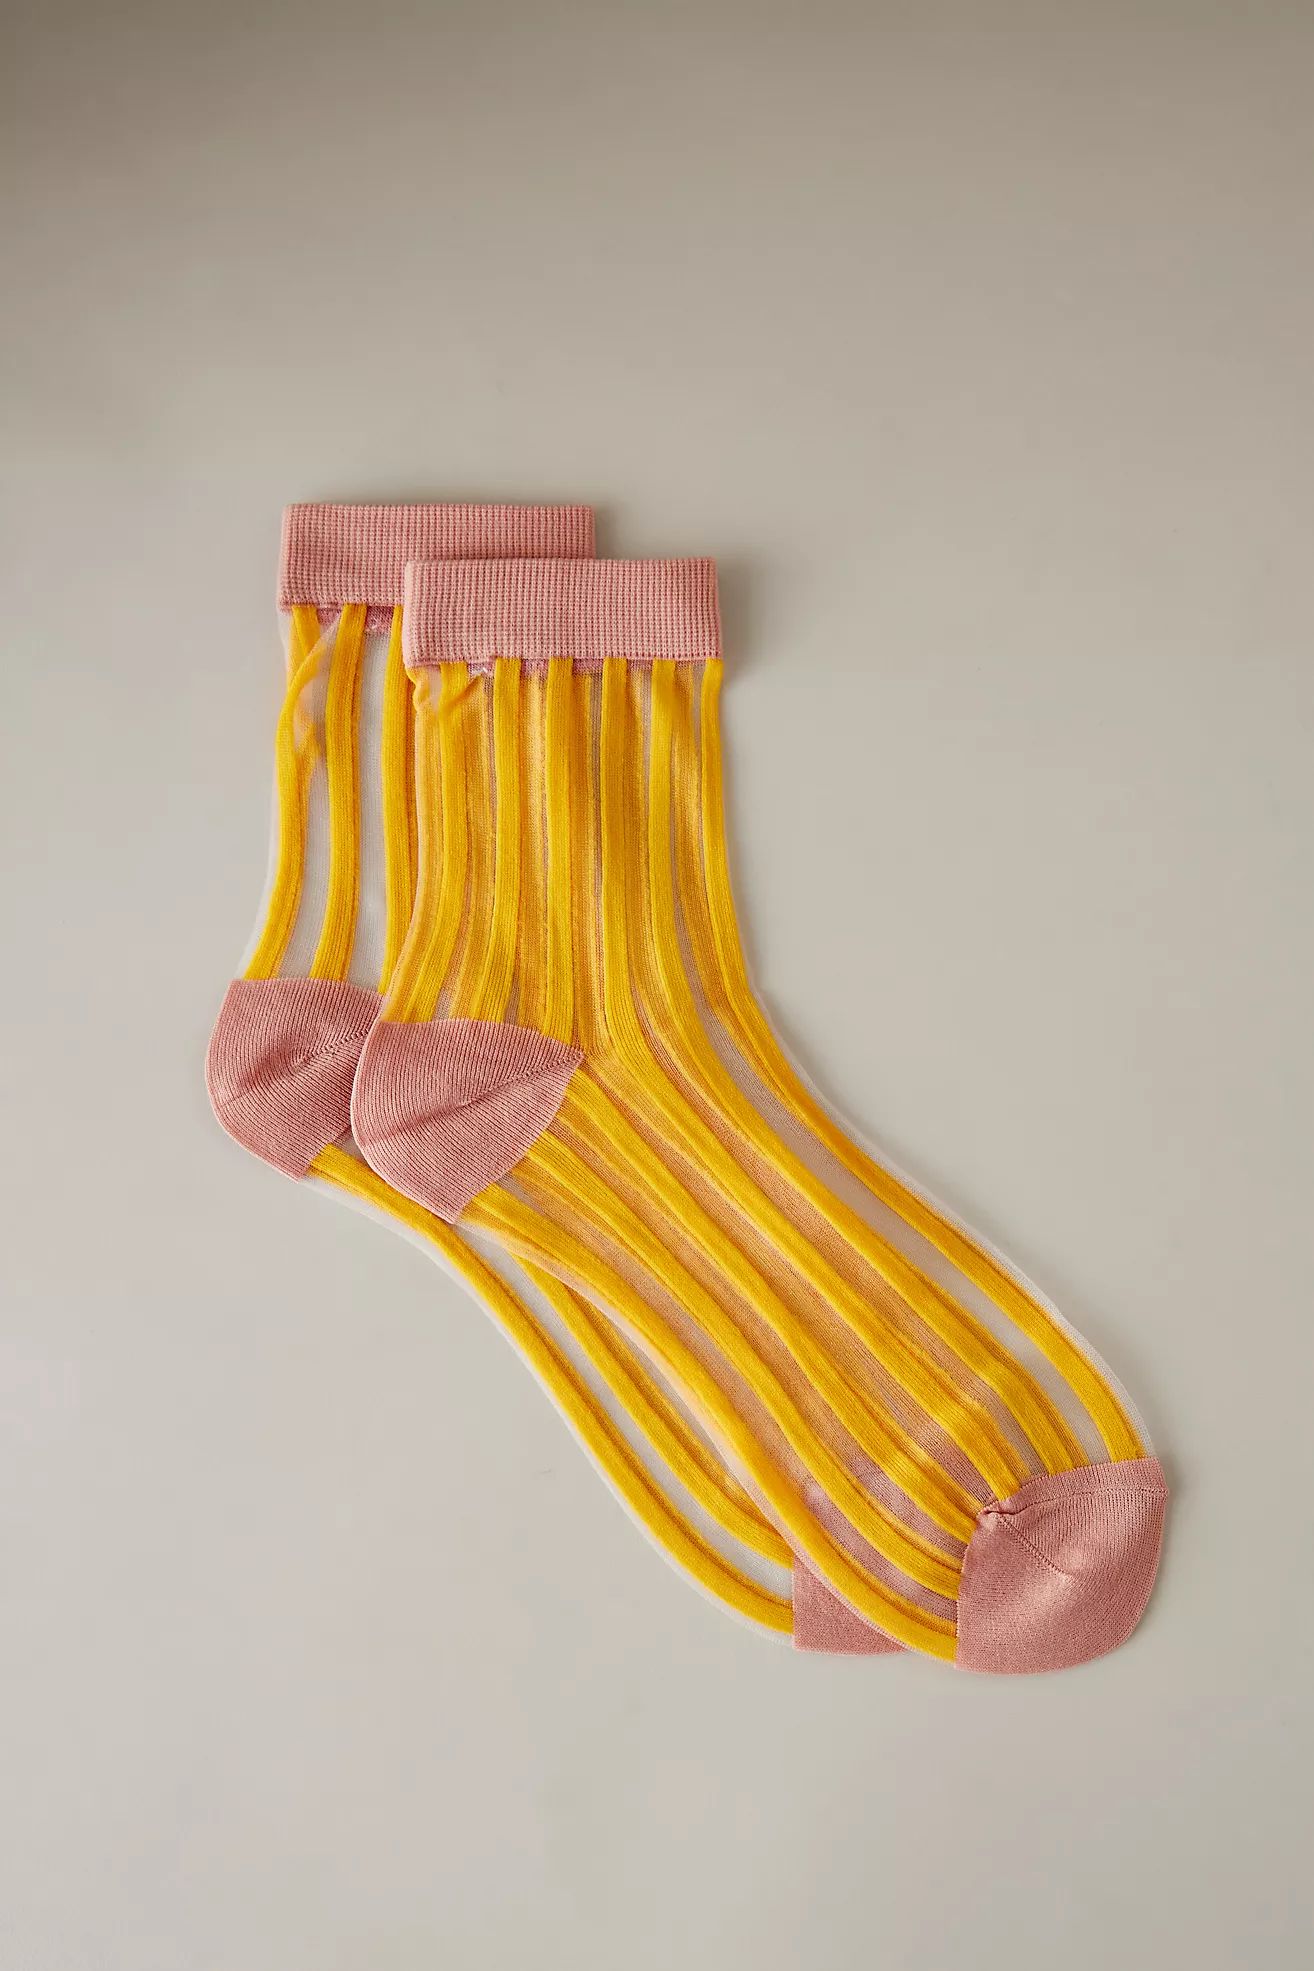 Hansel From Basel Sheer Striped Ankle Socks | Anthropologie (UK)